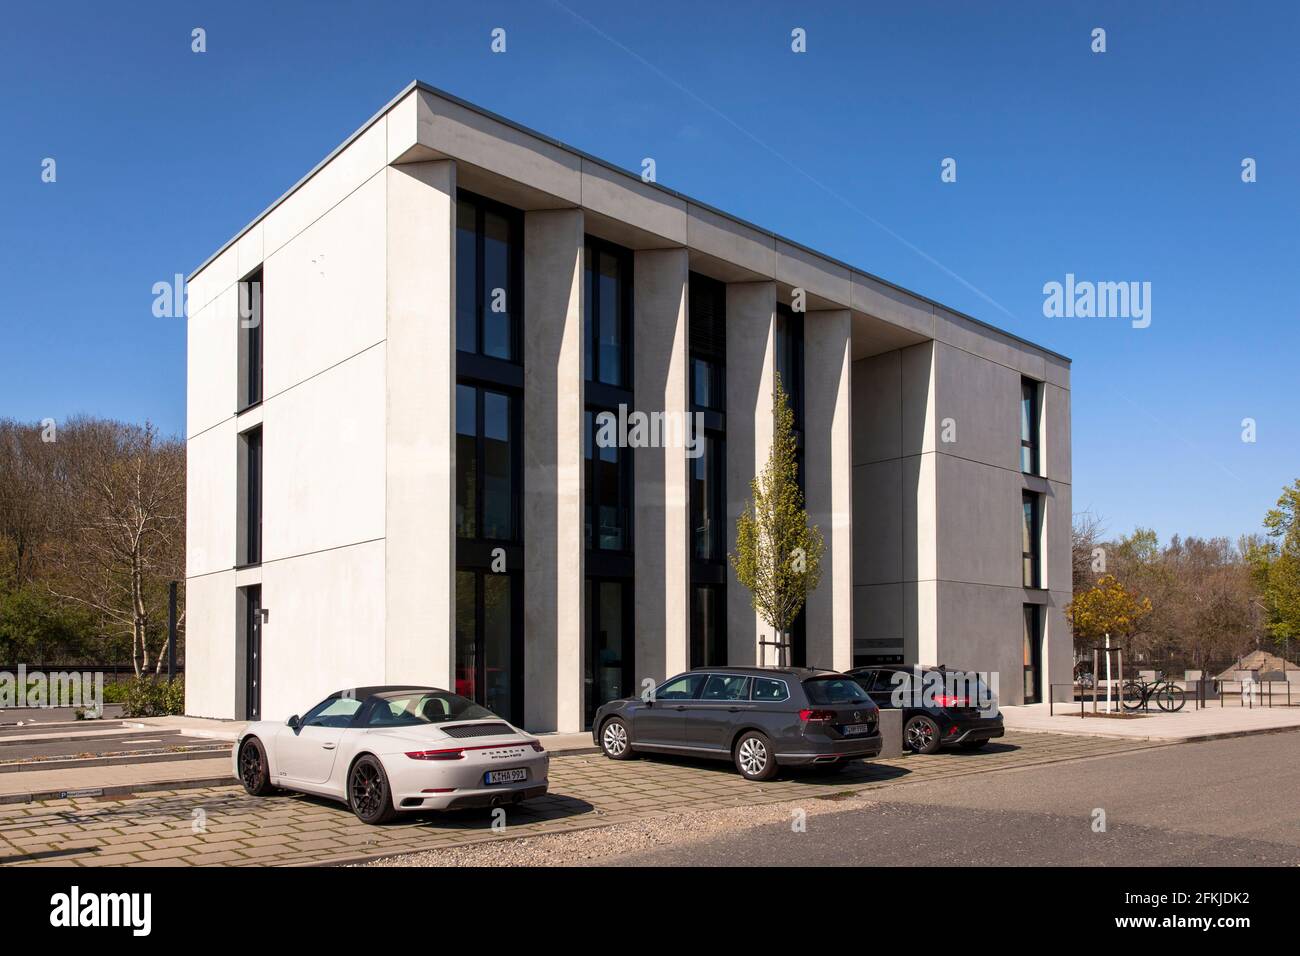 Das Bürogebäude Fenstermacher im Geschäfts- und Landschaftspark Triotop im Stadtteil Vogelsang, Mronz+Schaefer architects, Köln, Deutschland. Stockfoto